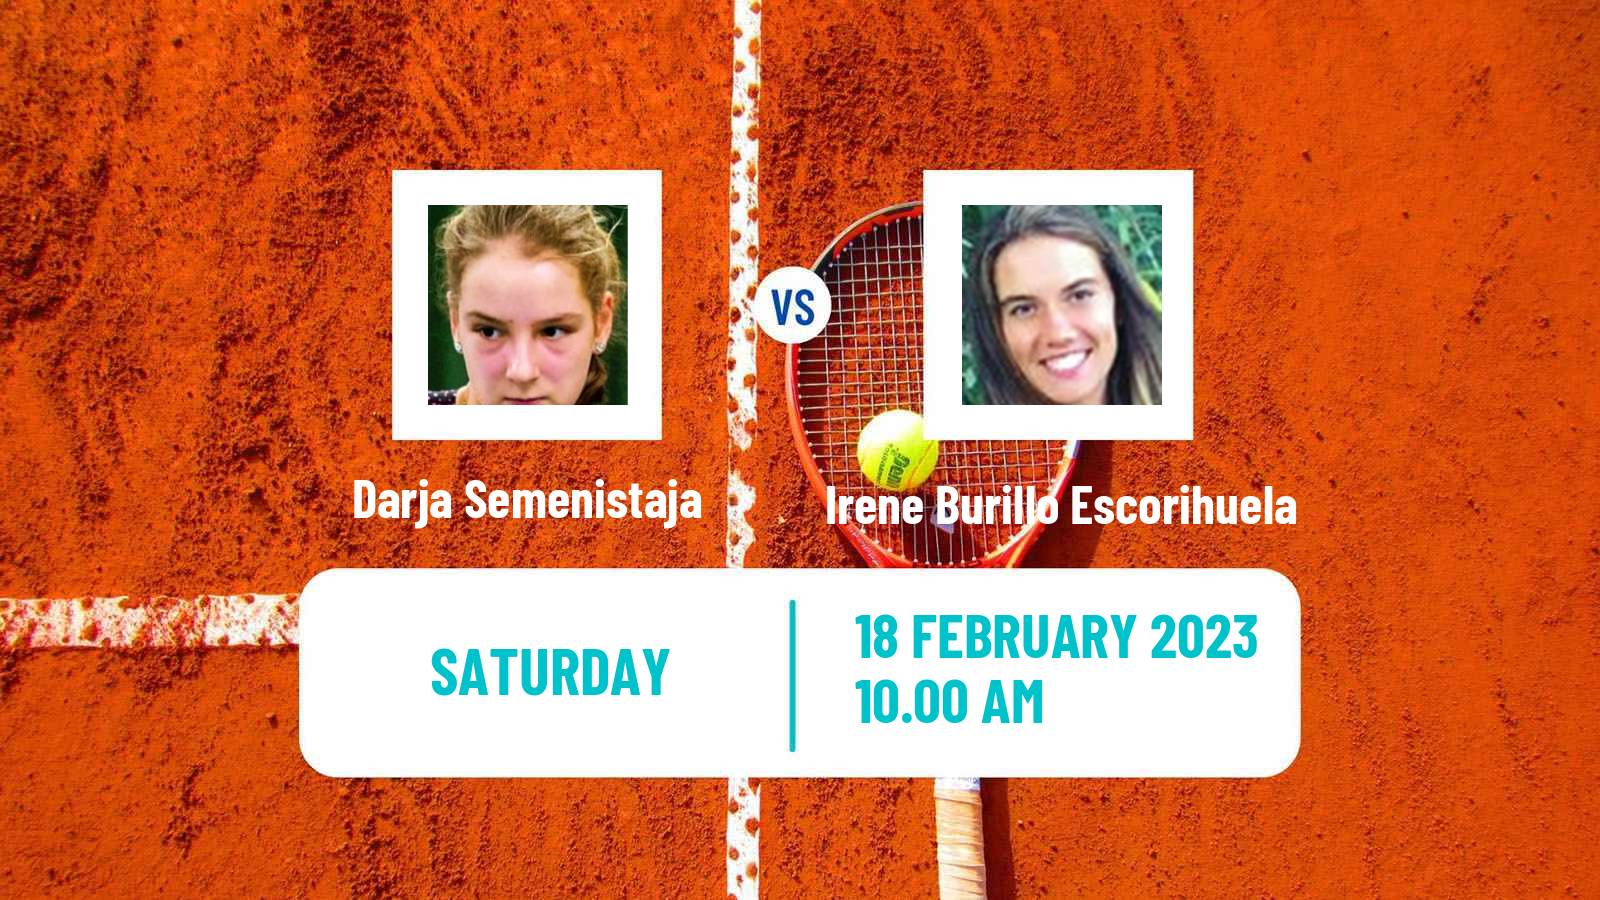 Tennis ITF Tournaments Darja Semenistaja - Irene Burillo Escorihuela